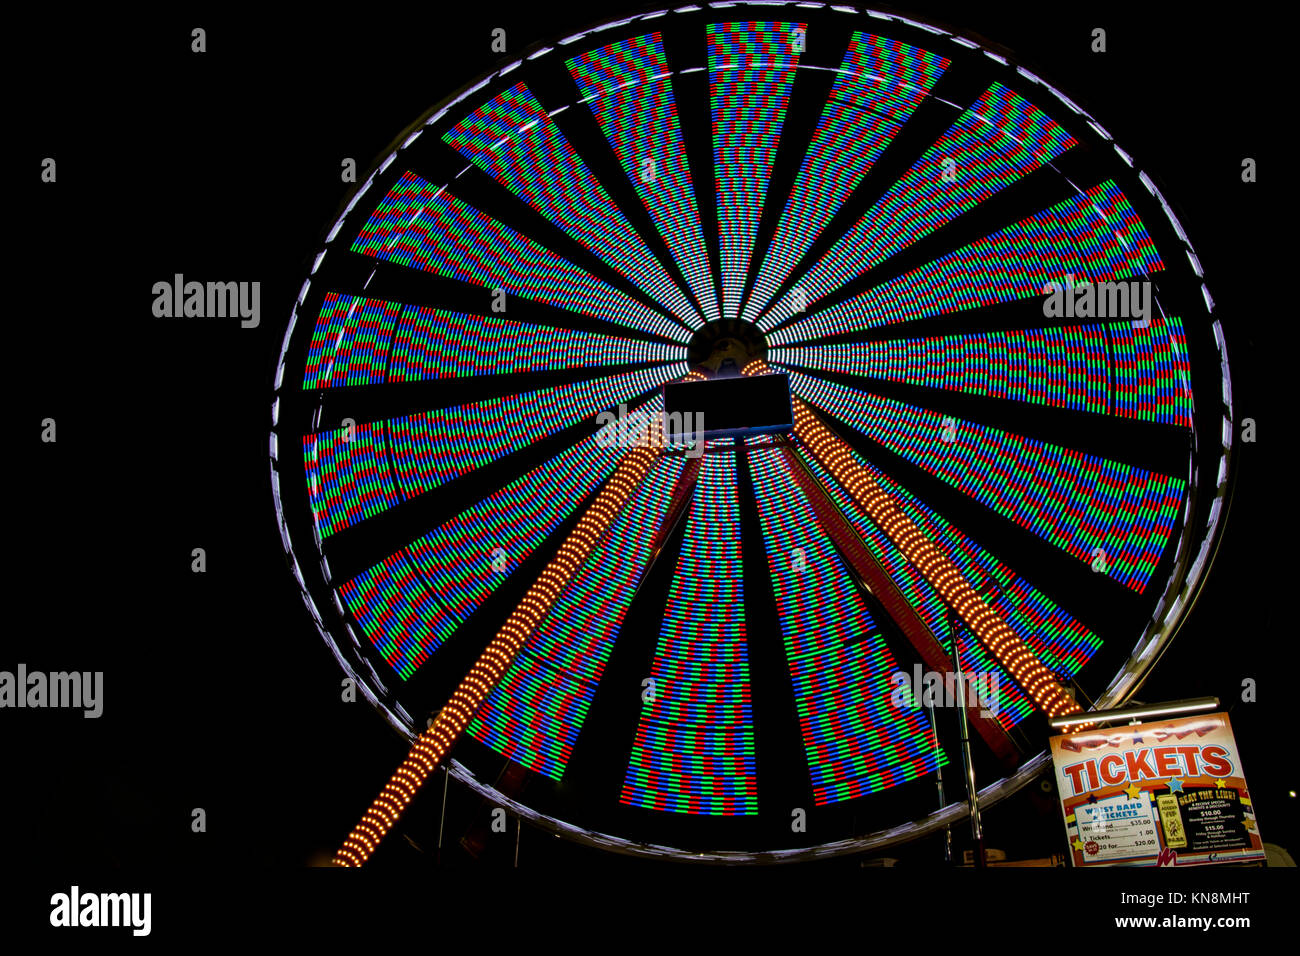 Illuminato di ruota panoramica Ferris di notte Foto Stock